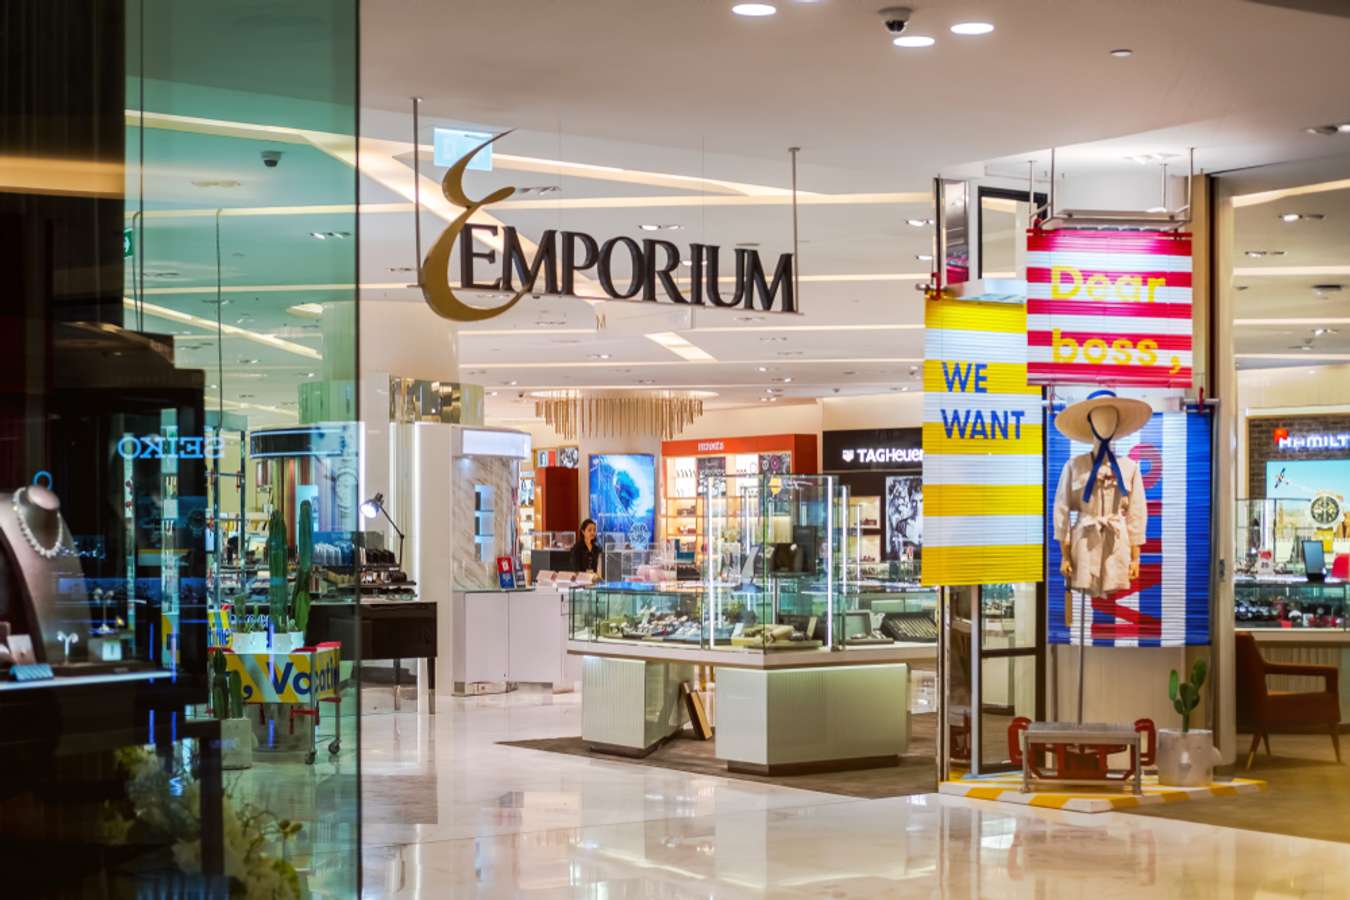 Louis Vuitton Shop, Emporium Shopping Mall, Bangkok, Thailand